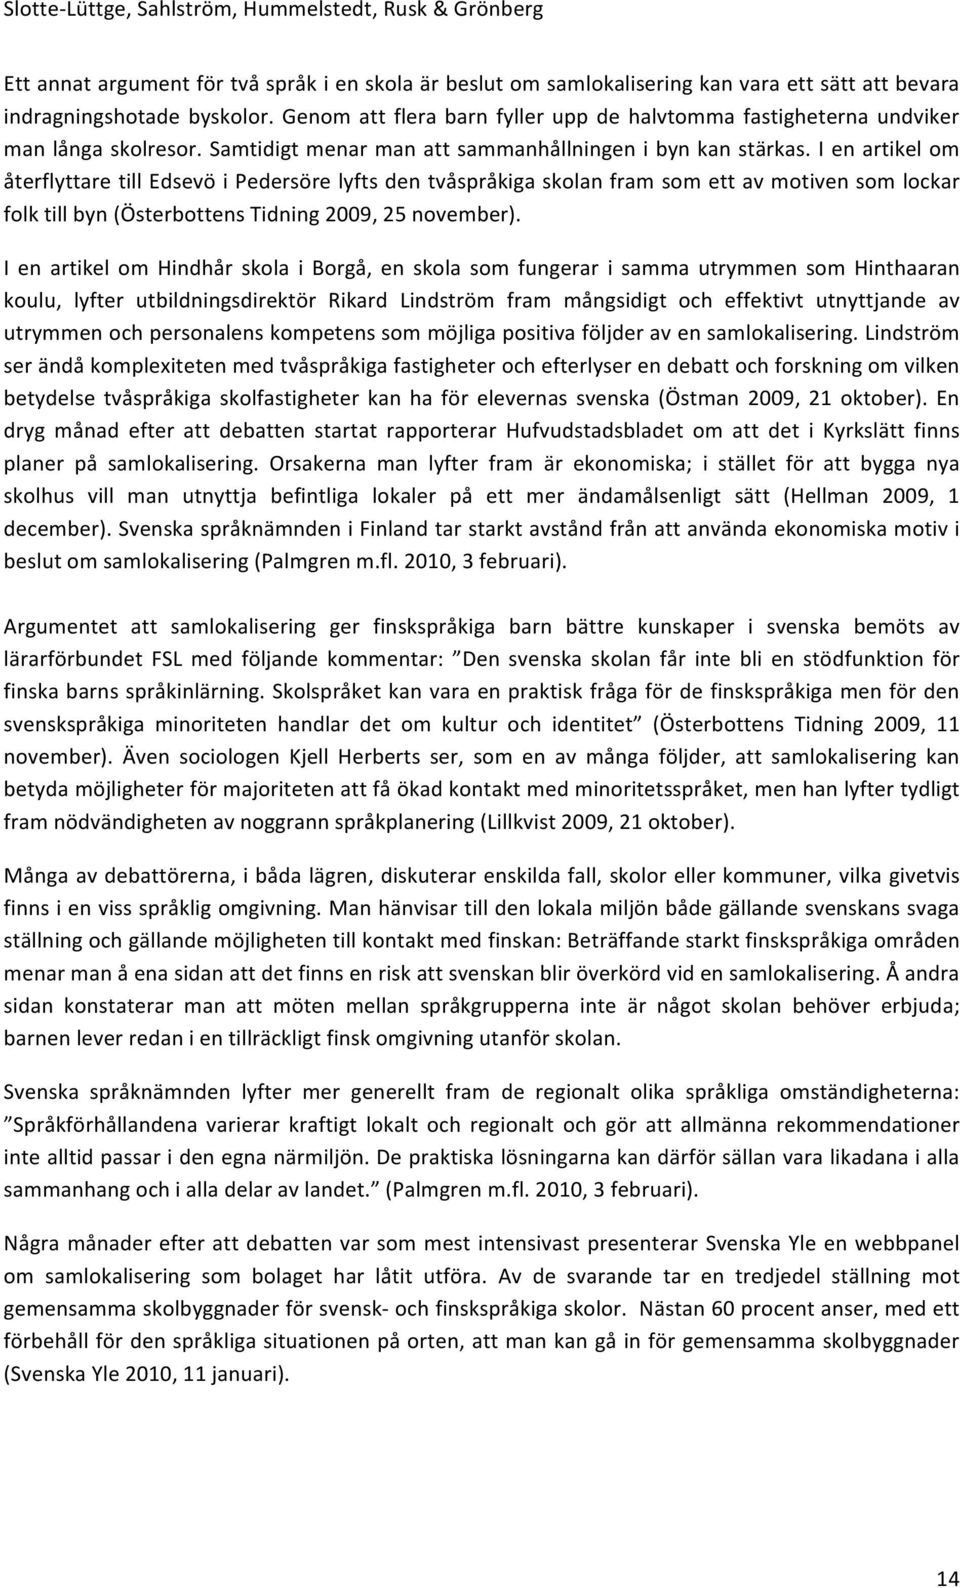 I en artikel om återflyttare till Edsevö i Pedersöre lyfts den tvåspråkiga skolan fram som ett av motiven som lockar folk till byn (Österbottens Tidning 2009, 25 november).